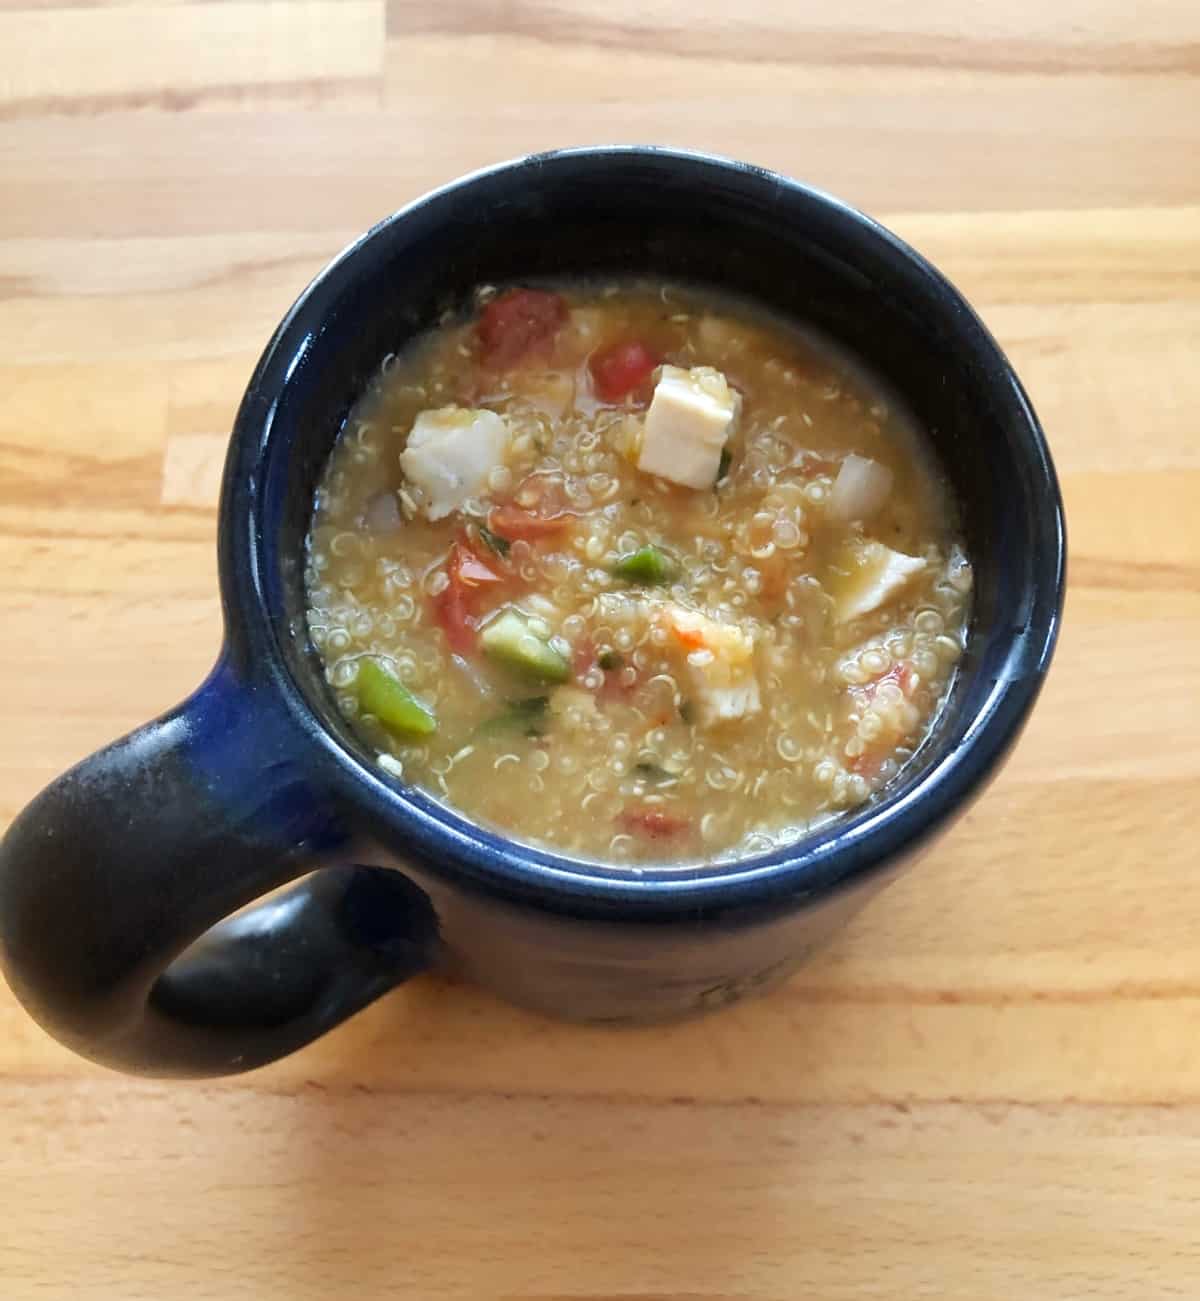 15-minute soup with quinoa, chicken and pico de gallo salsa in blue mug.